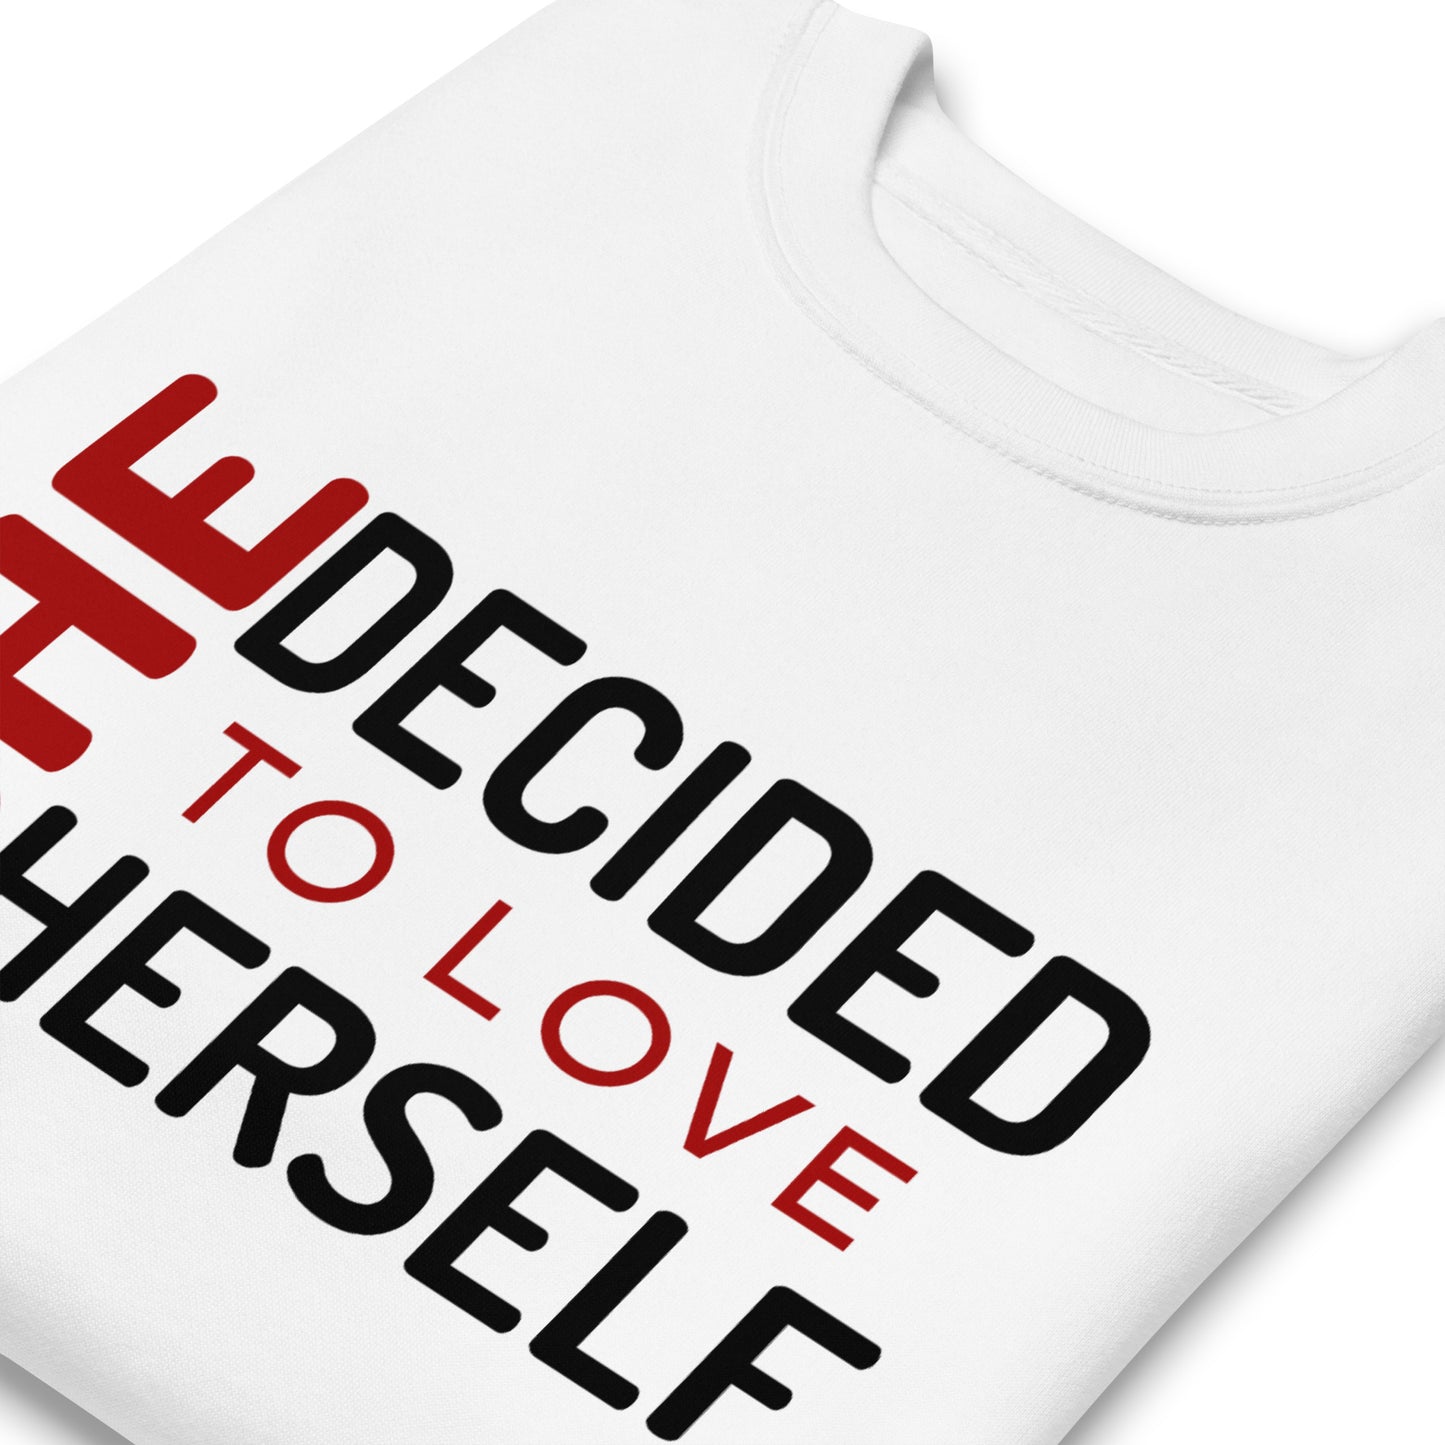 SHE DECIDED TO LOVE HERSELF - Unisex Premium Sweatshirt